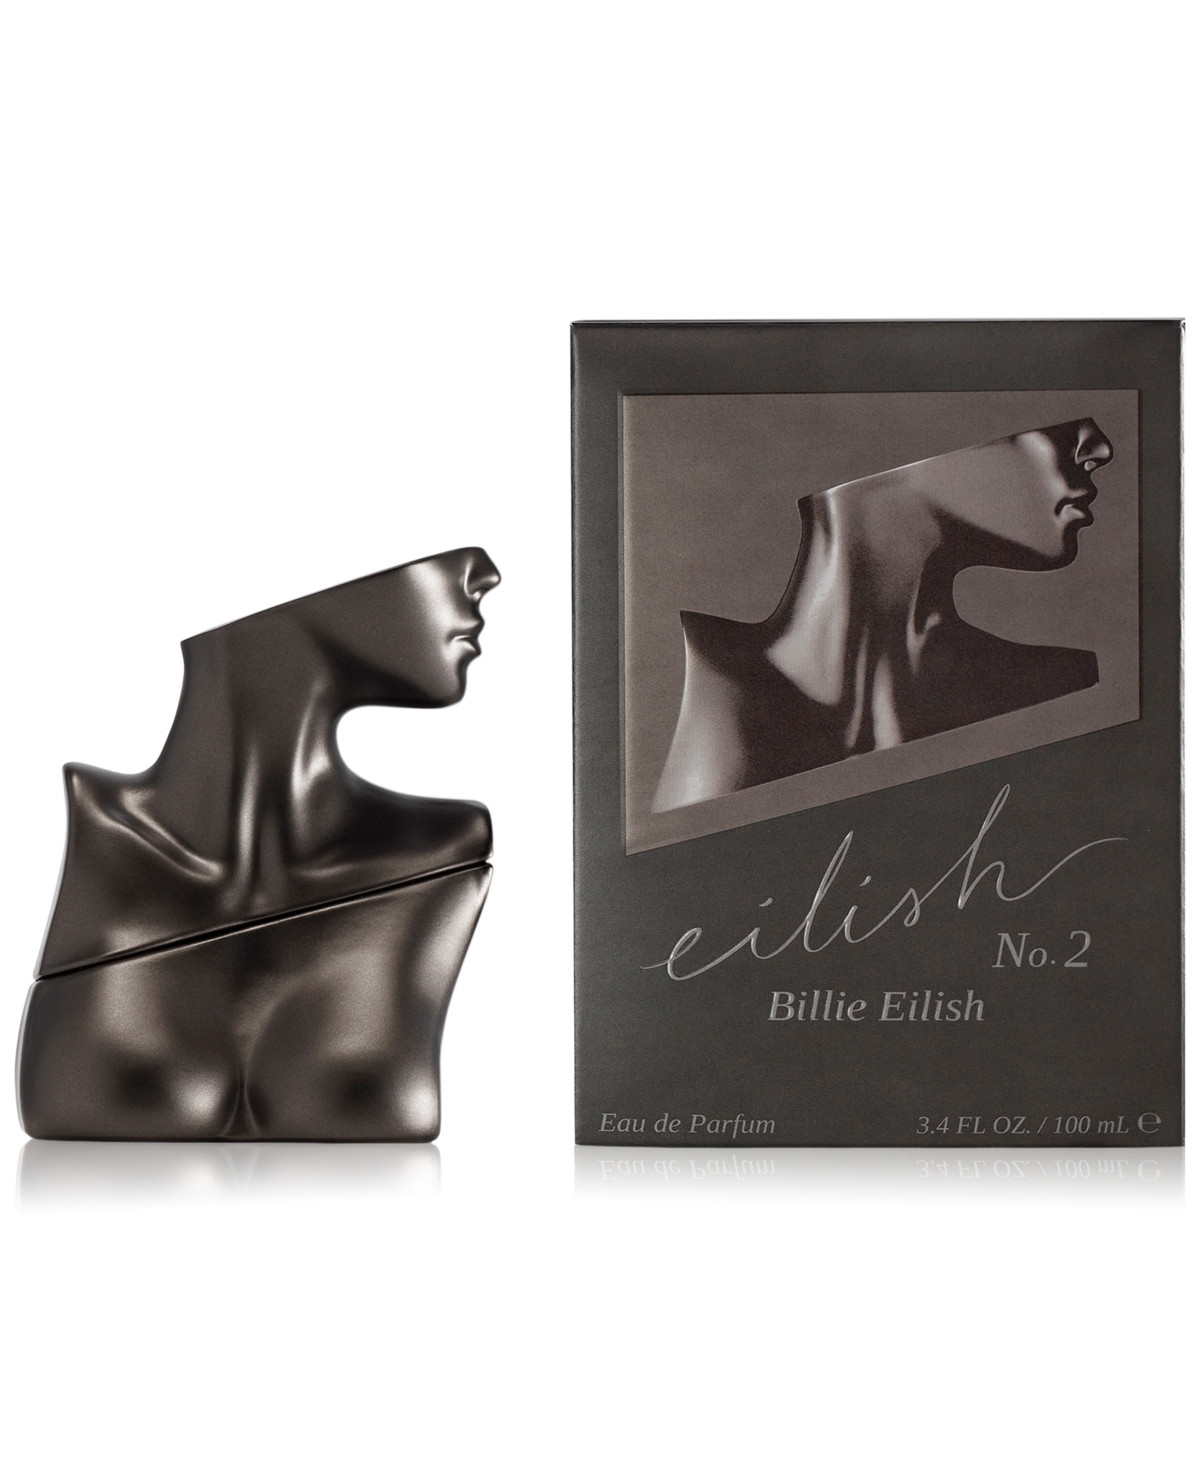 Eilish No. 2 Eau de Parfum, 3.4 oz.